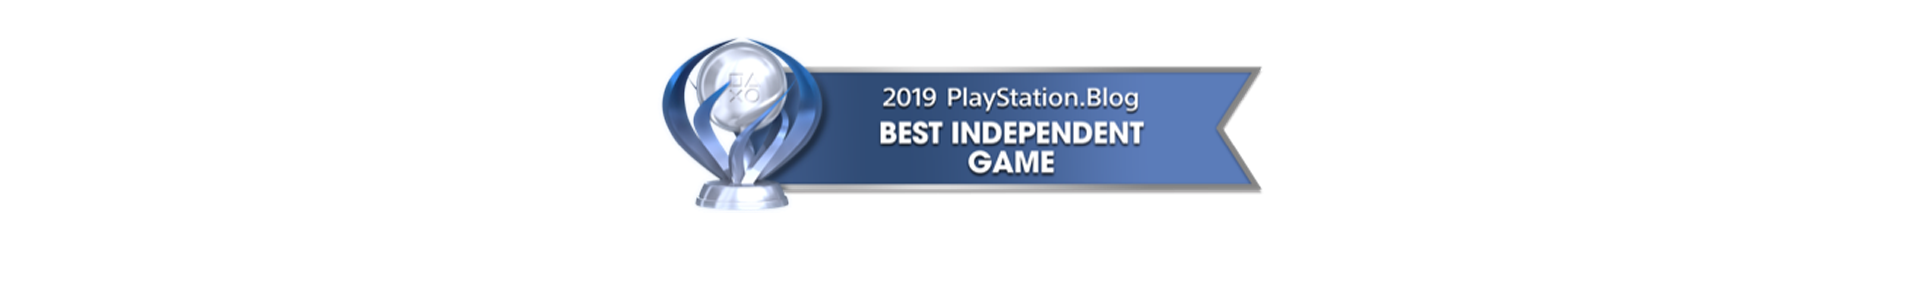 Best-independent-game-Playstation-blog-2019.png